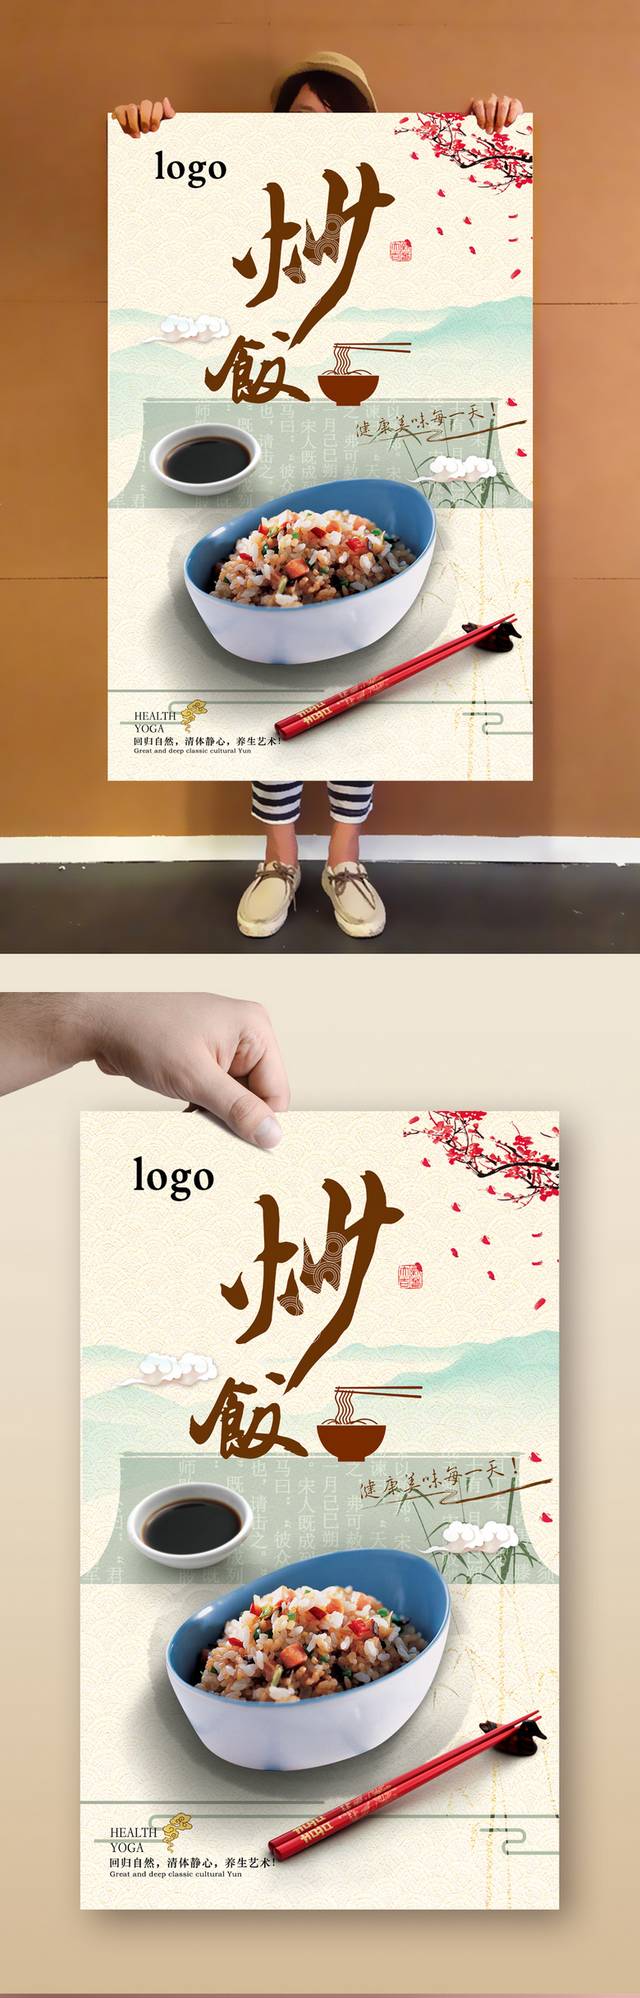 炒饭美食宣传海报